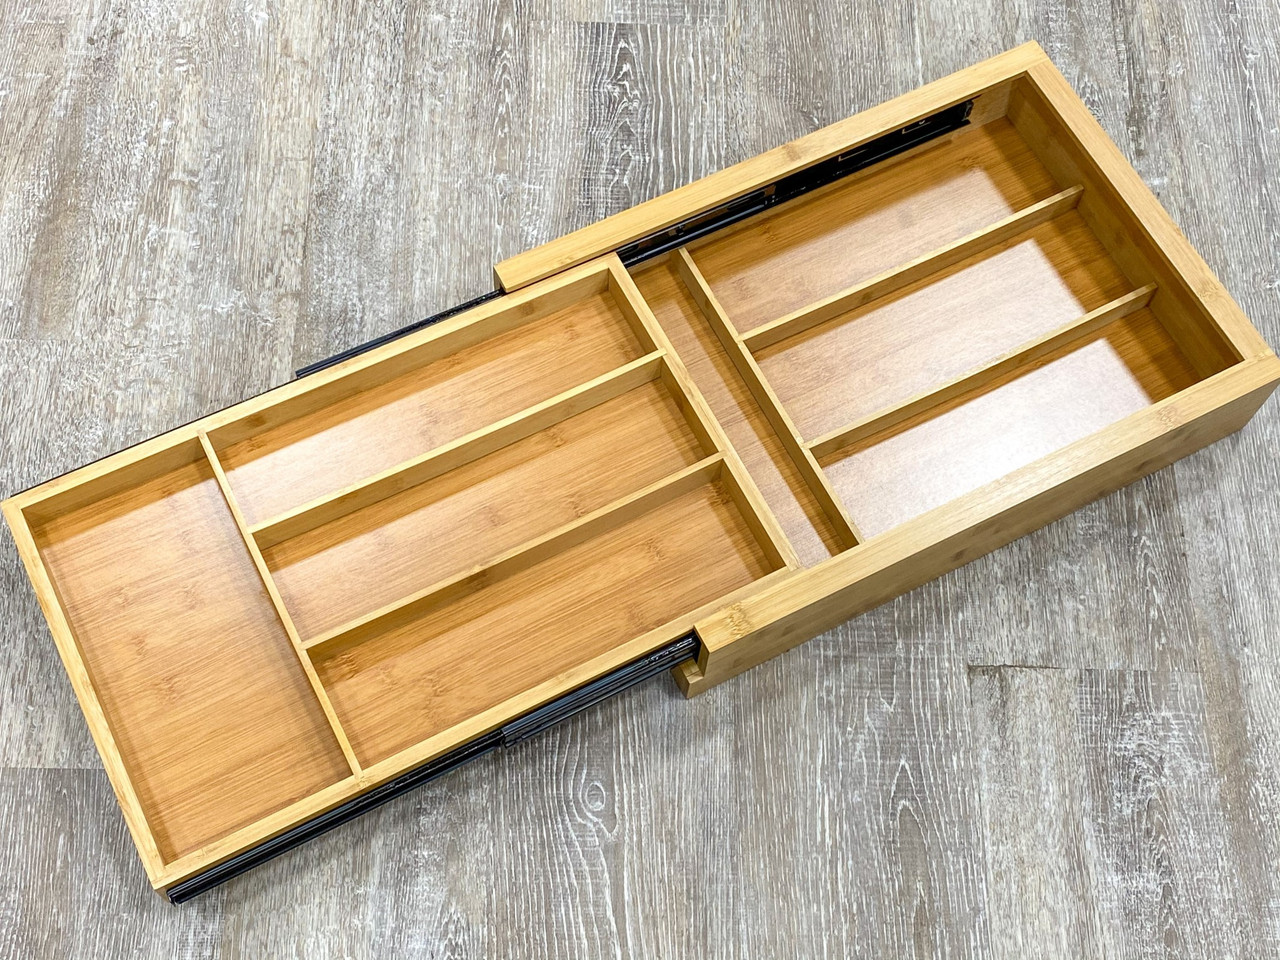 prefab drawer kits